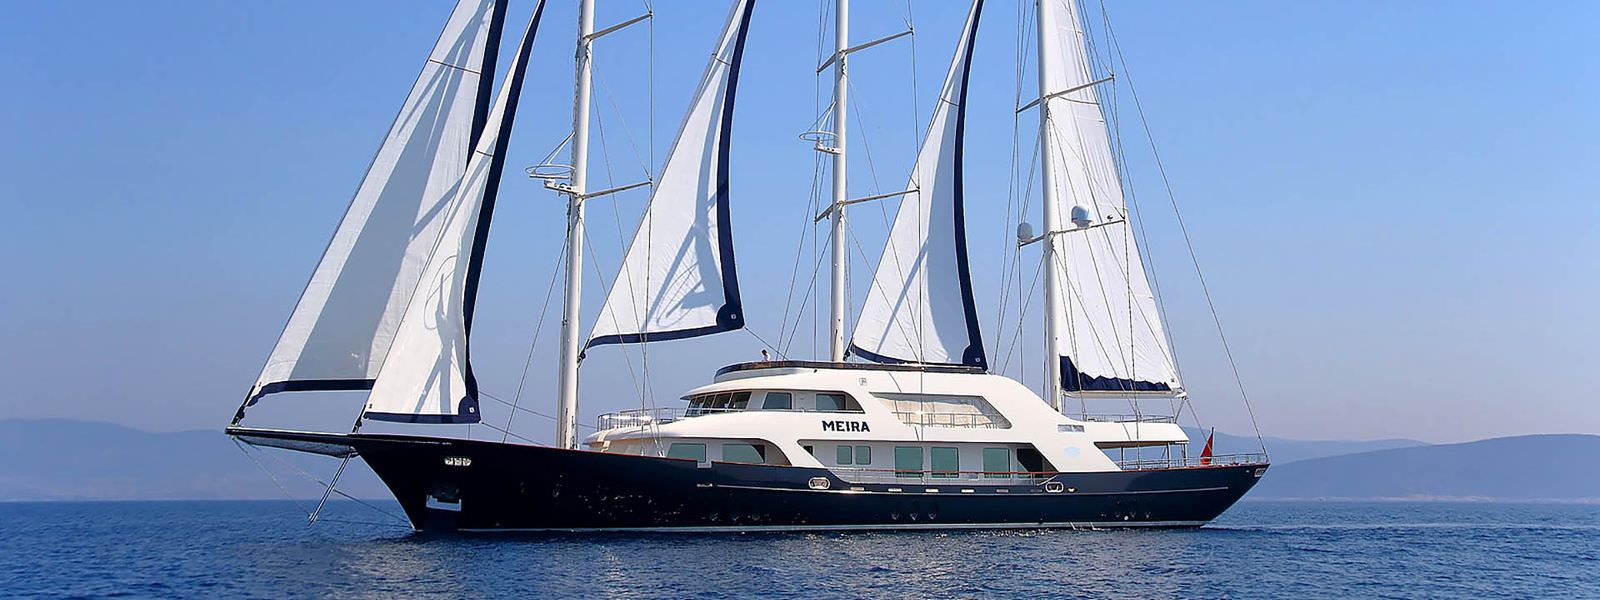 yacht meira